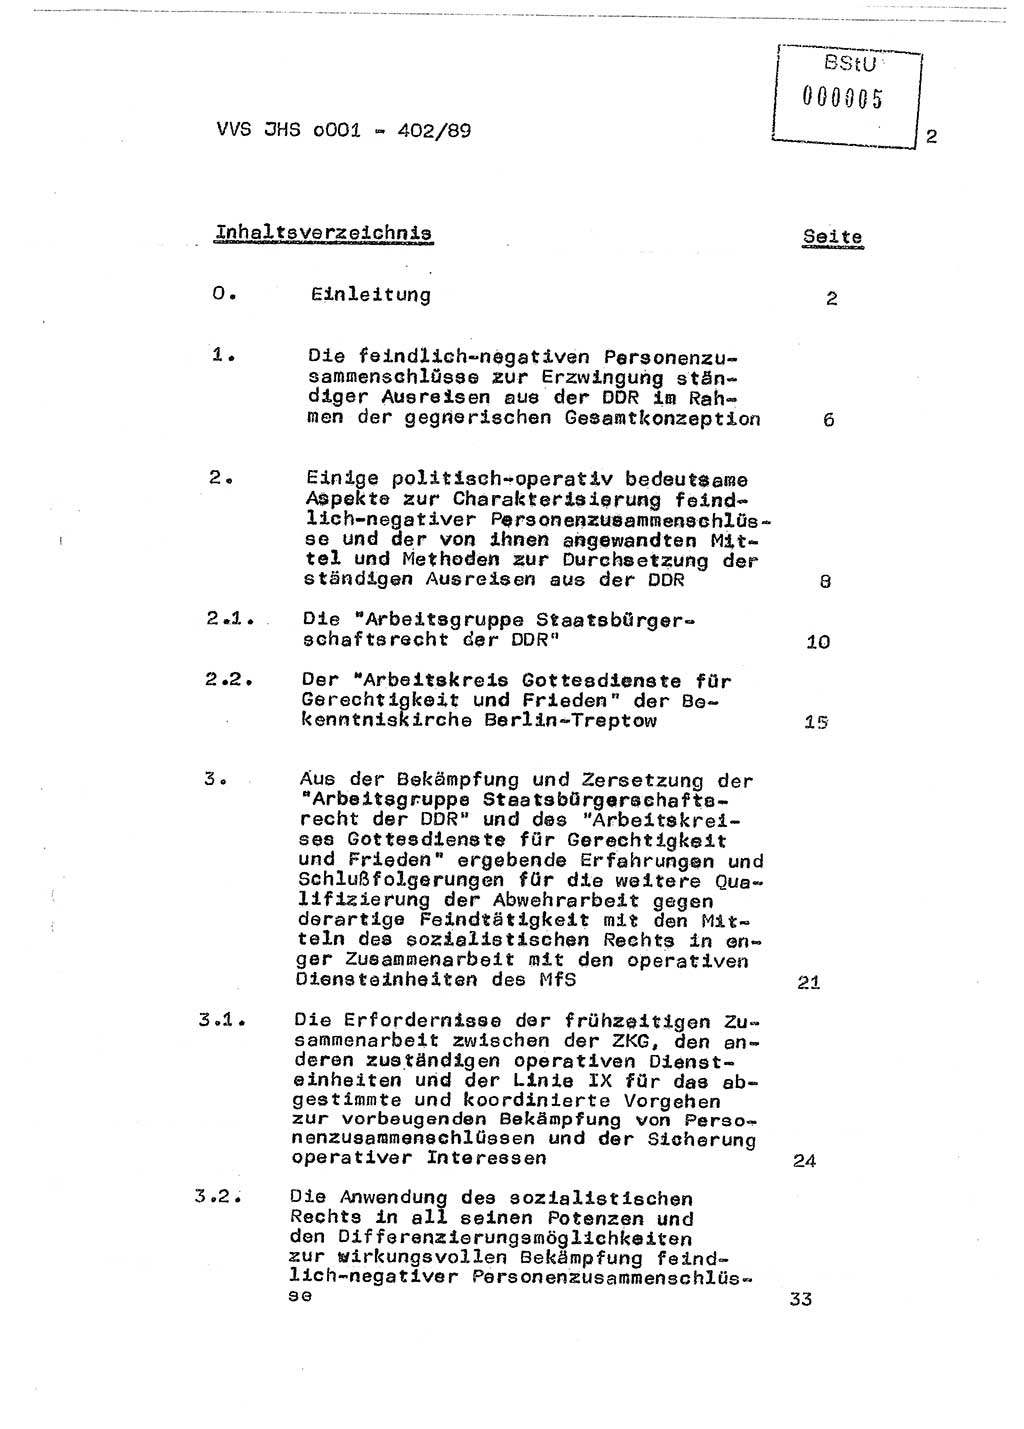 Diplomarbeit Major Günter Müller (HA Ⅸ/9), Ministerium für Staatssicherheit (MfS) [Deutsche Demokratische Republik (DDR)], Juristische Hochschule (JHS), Vertrauliche Verschlußsache (VVS) o001-402/89, Potsdam 1989, Seite 2 (Dipl.-Arb. MfS DDR JHS VVS o001-402/89 1989, S. 2)